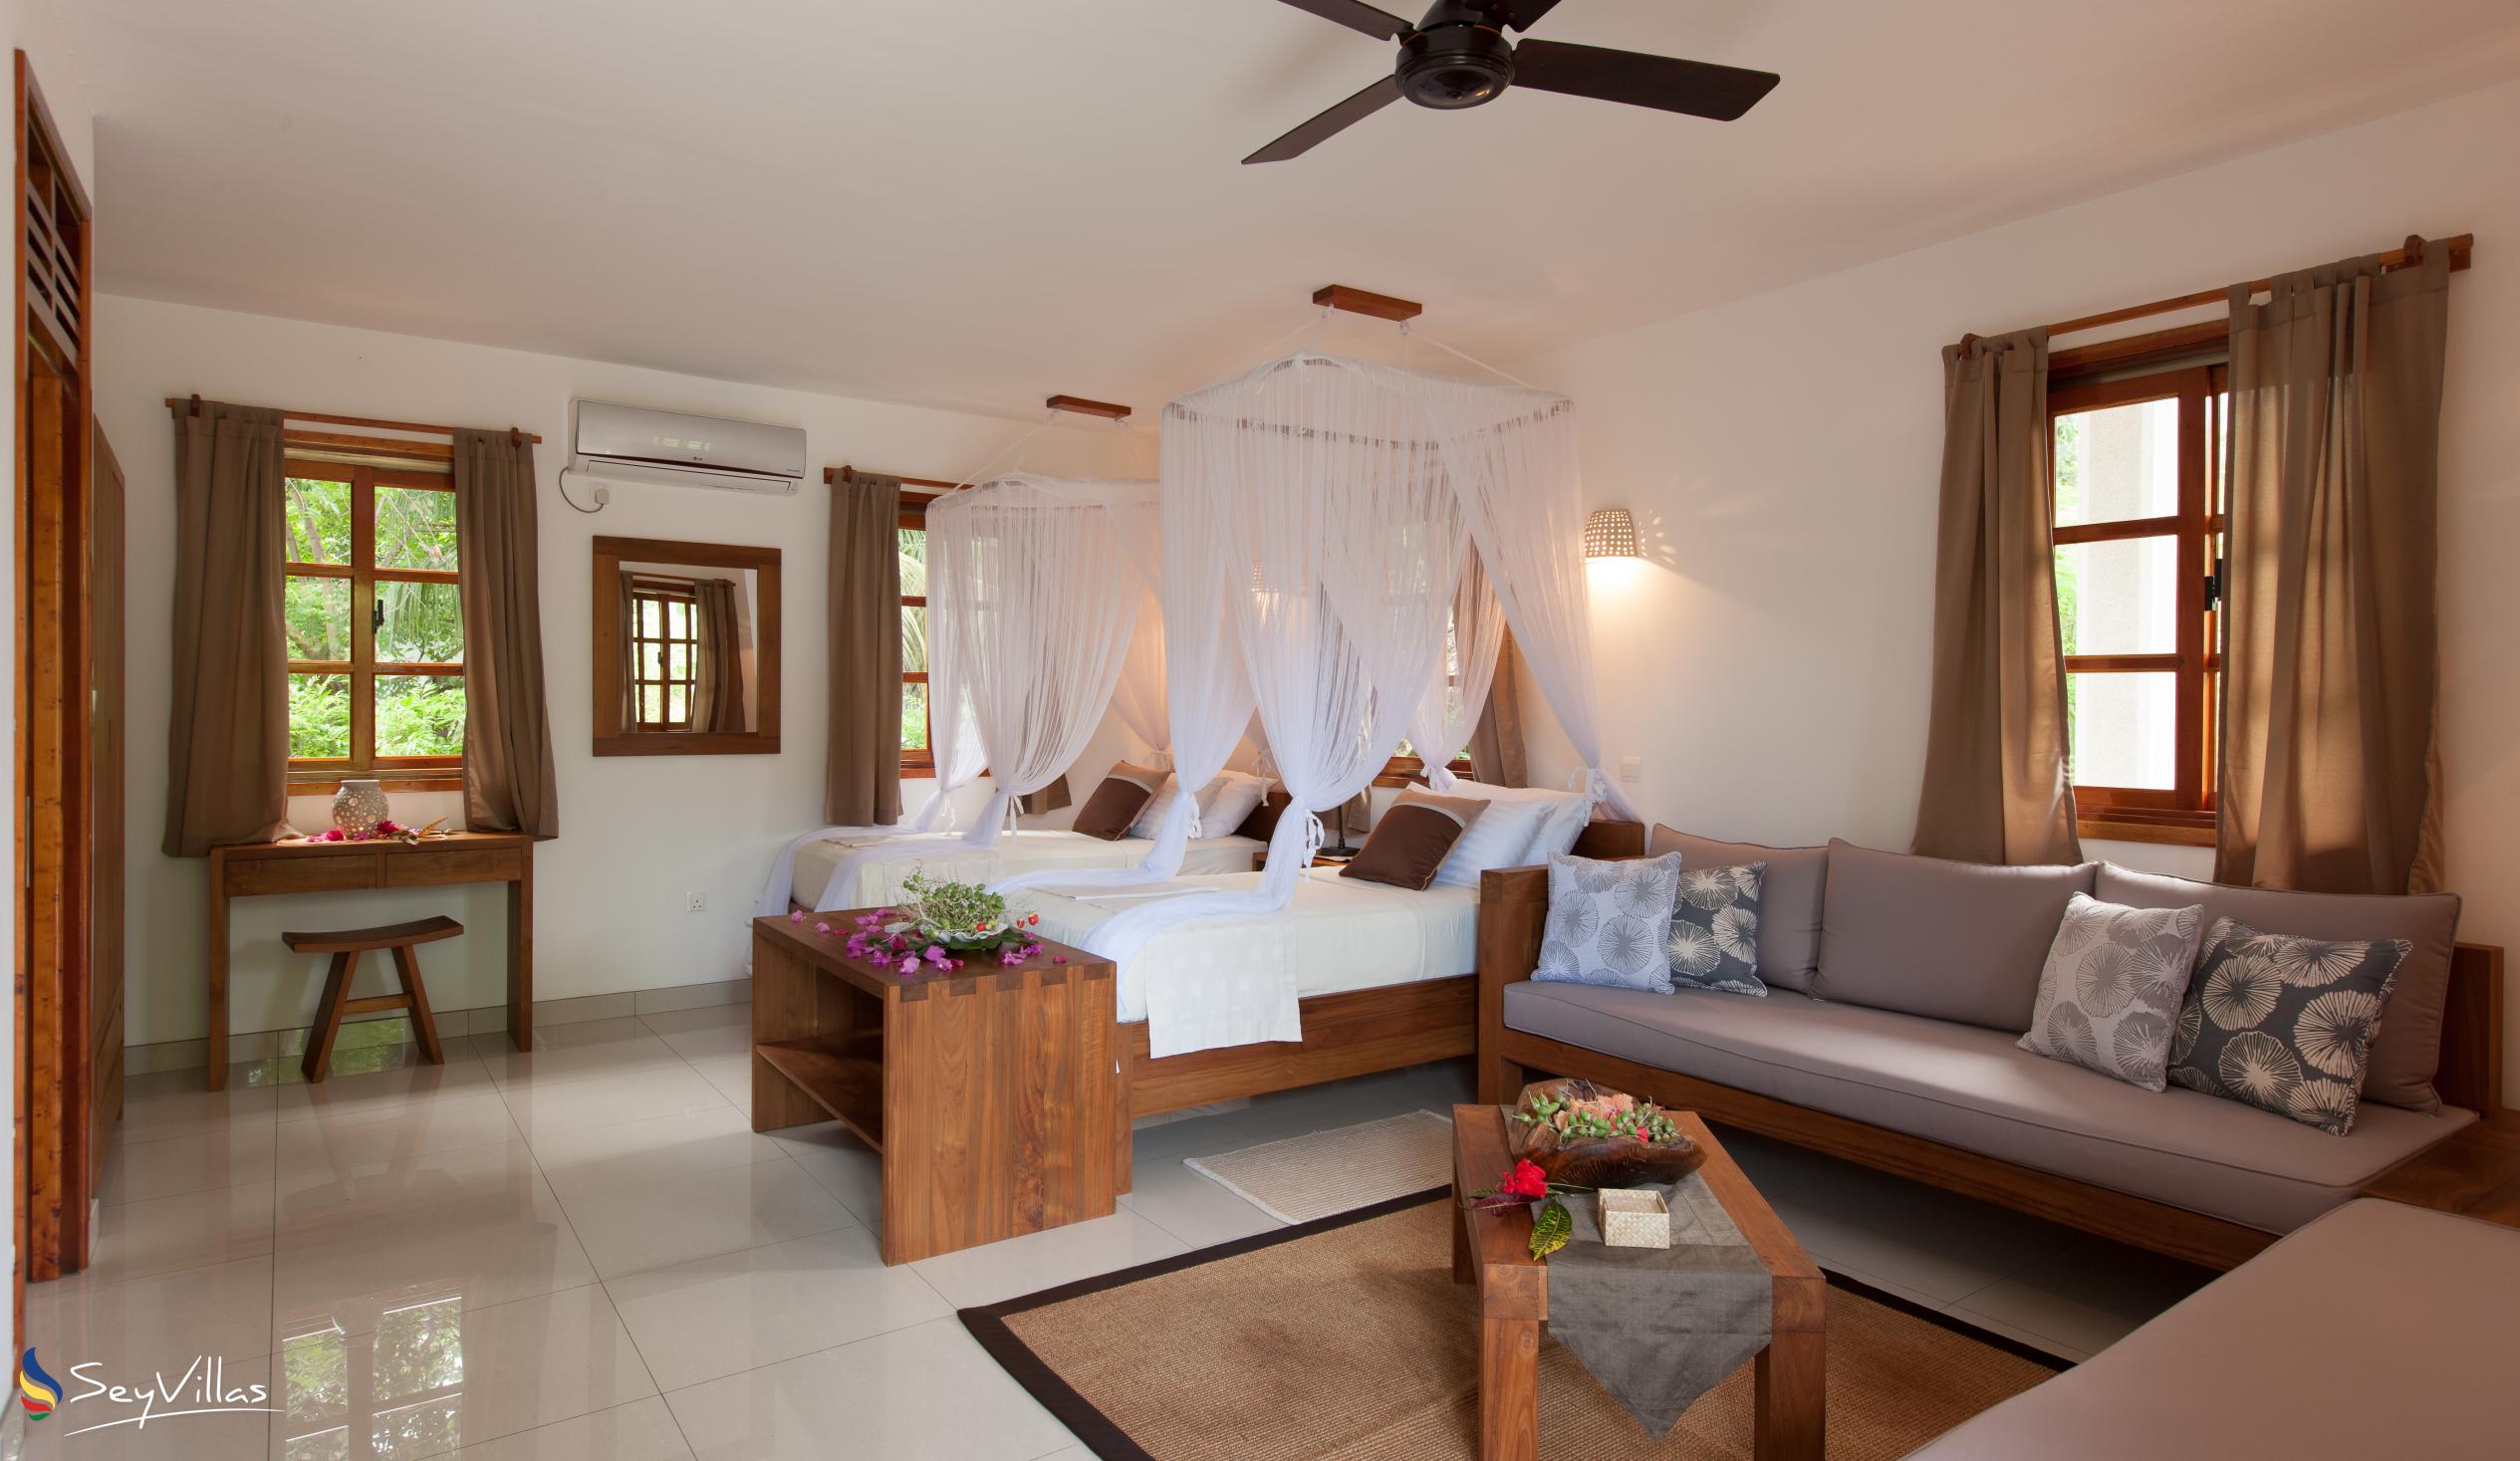 Photo 47: Domaine Les Rochers - Ground-Floor Luxury Apartment Kaz Rochers - La Digue (Seychelles)